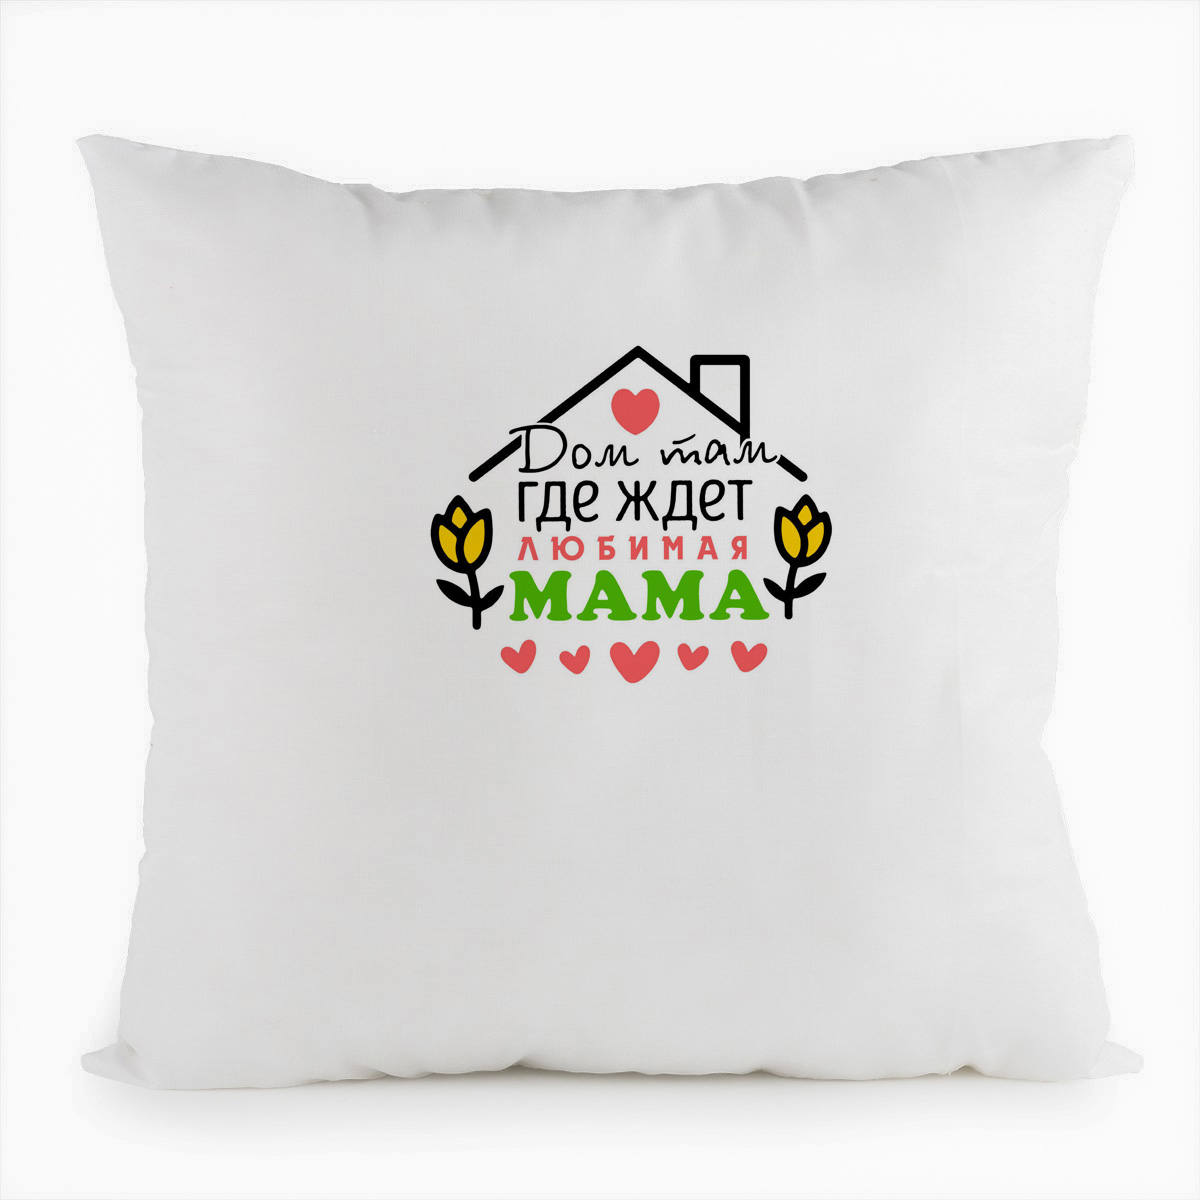 Белая подушка CoolPodarok: Дом, где мама тебя ждет.